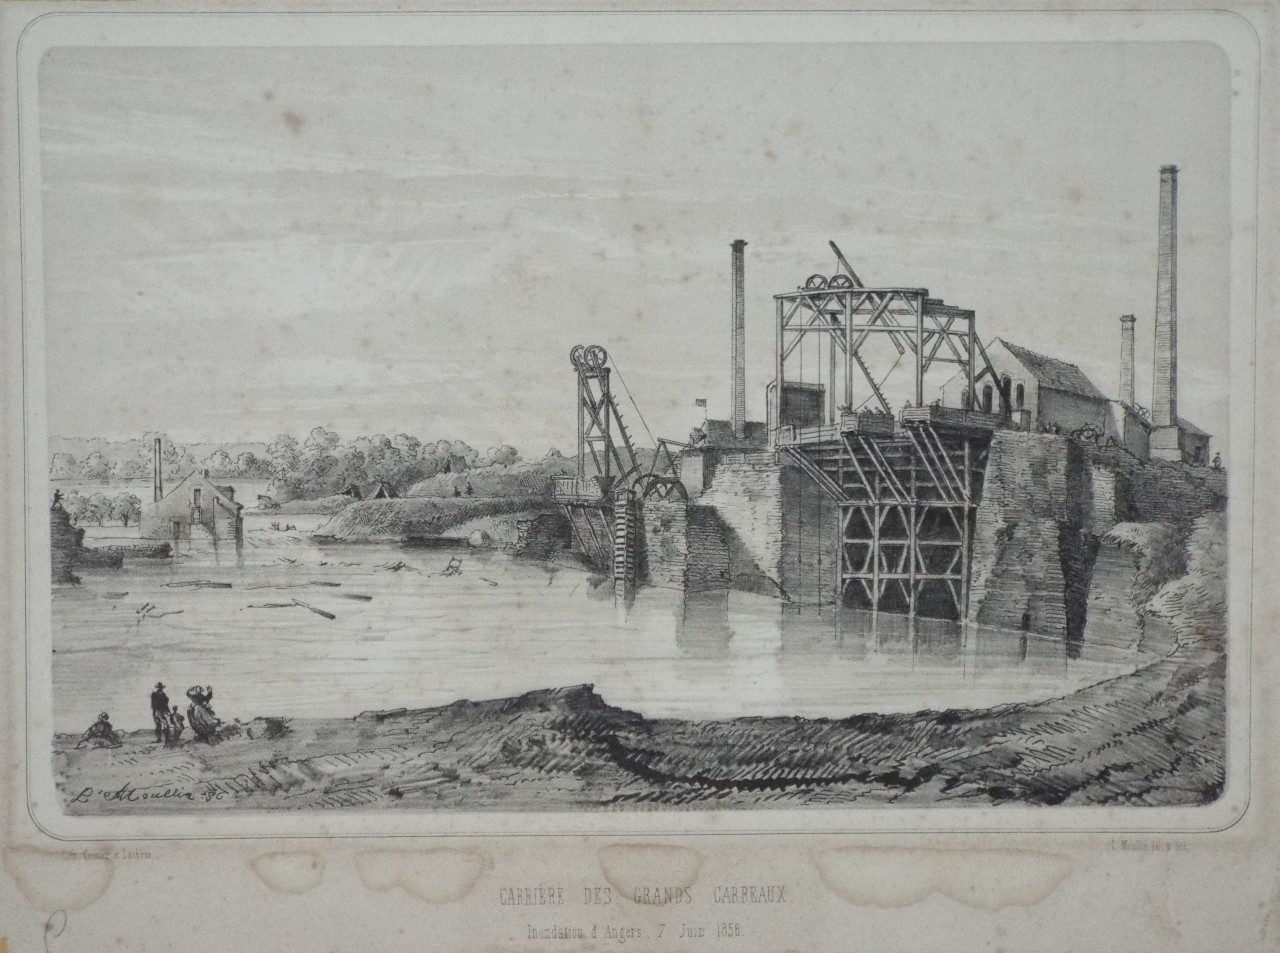 Lithograph - Carriere des Grands Carreaux. Inondation d'Angers, 7 Juin 1856. - Moullin